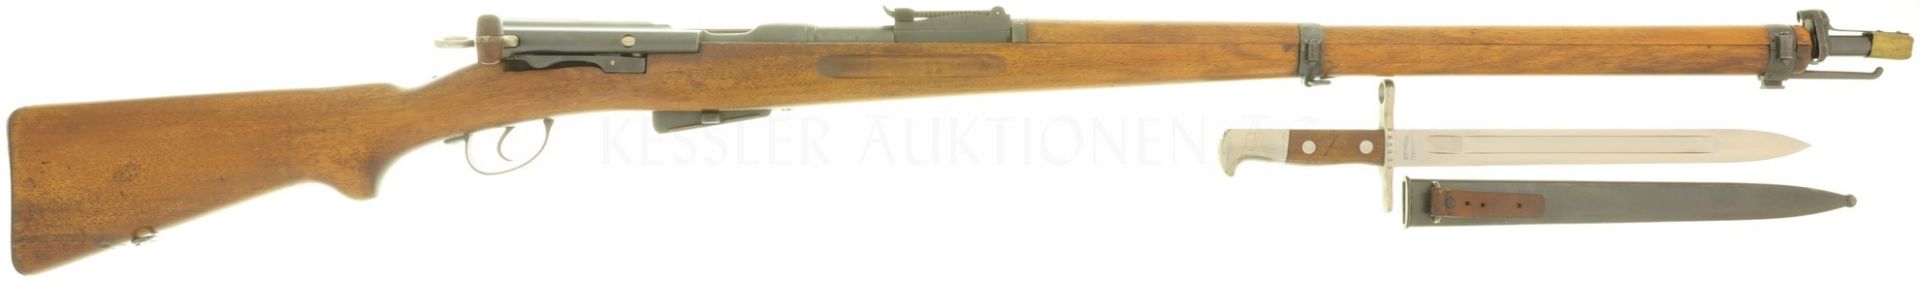 Repetierbüchse, W+F Bern, Infanteriegewehr Mod. 11, Kal. 7.55x55